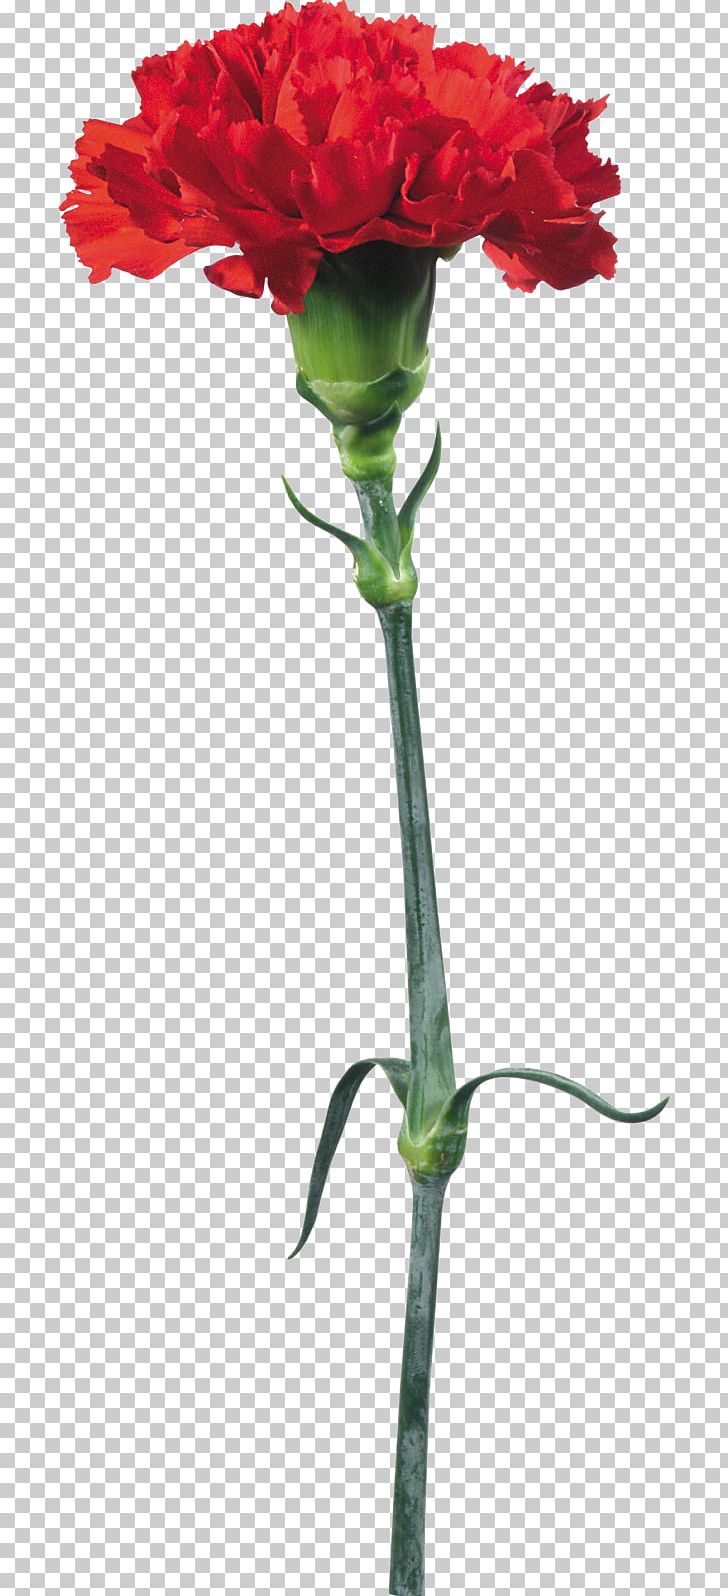 Kryddernellike Flower Carnation PNG, Clipart, Annual Plant, Cut Flowers, Dianthus, Digital Image, Floral Design Free PNG Download